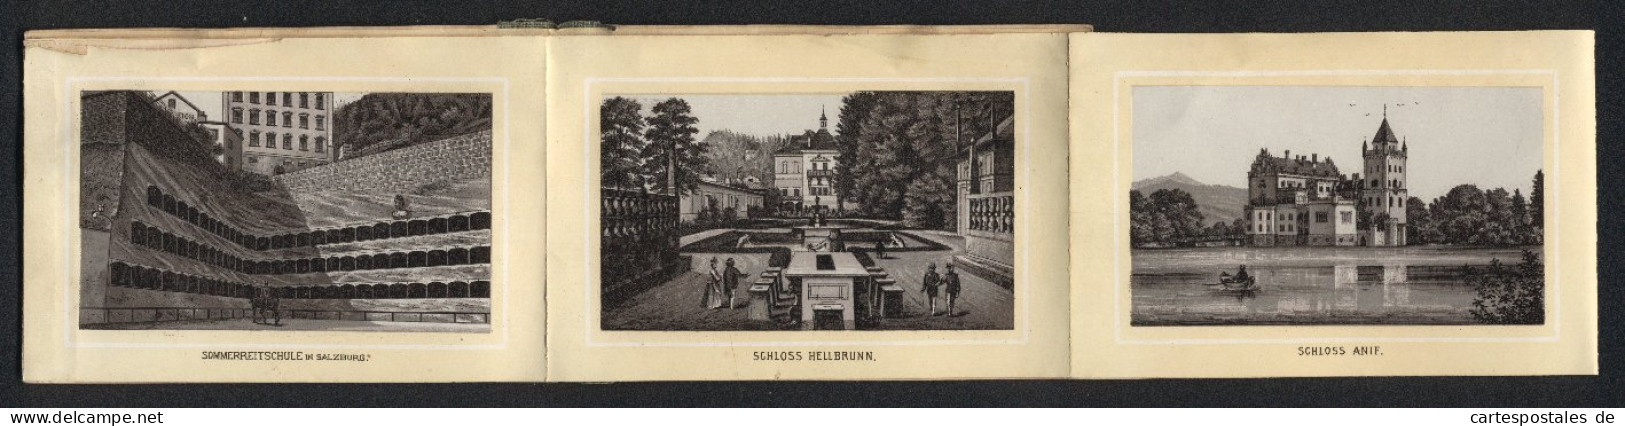 Leporello-Album Salzburg Mit 12 Lithographie-Ansichten, Berchtesgaden, Schloss Anif, Sommerreitschule, Mozartplatz  - Lithografieën